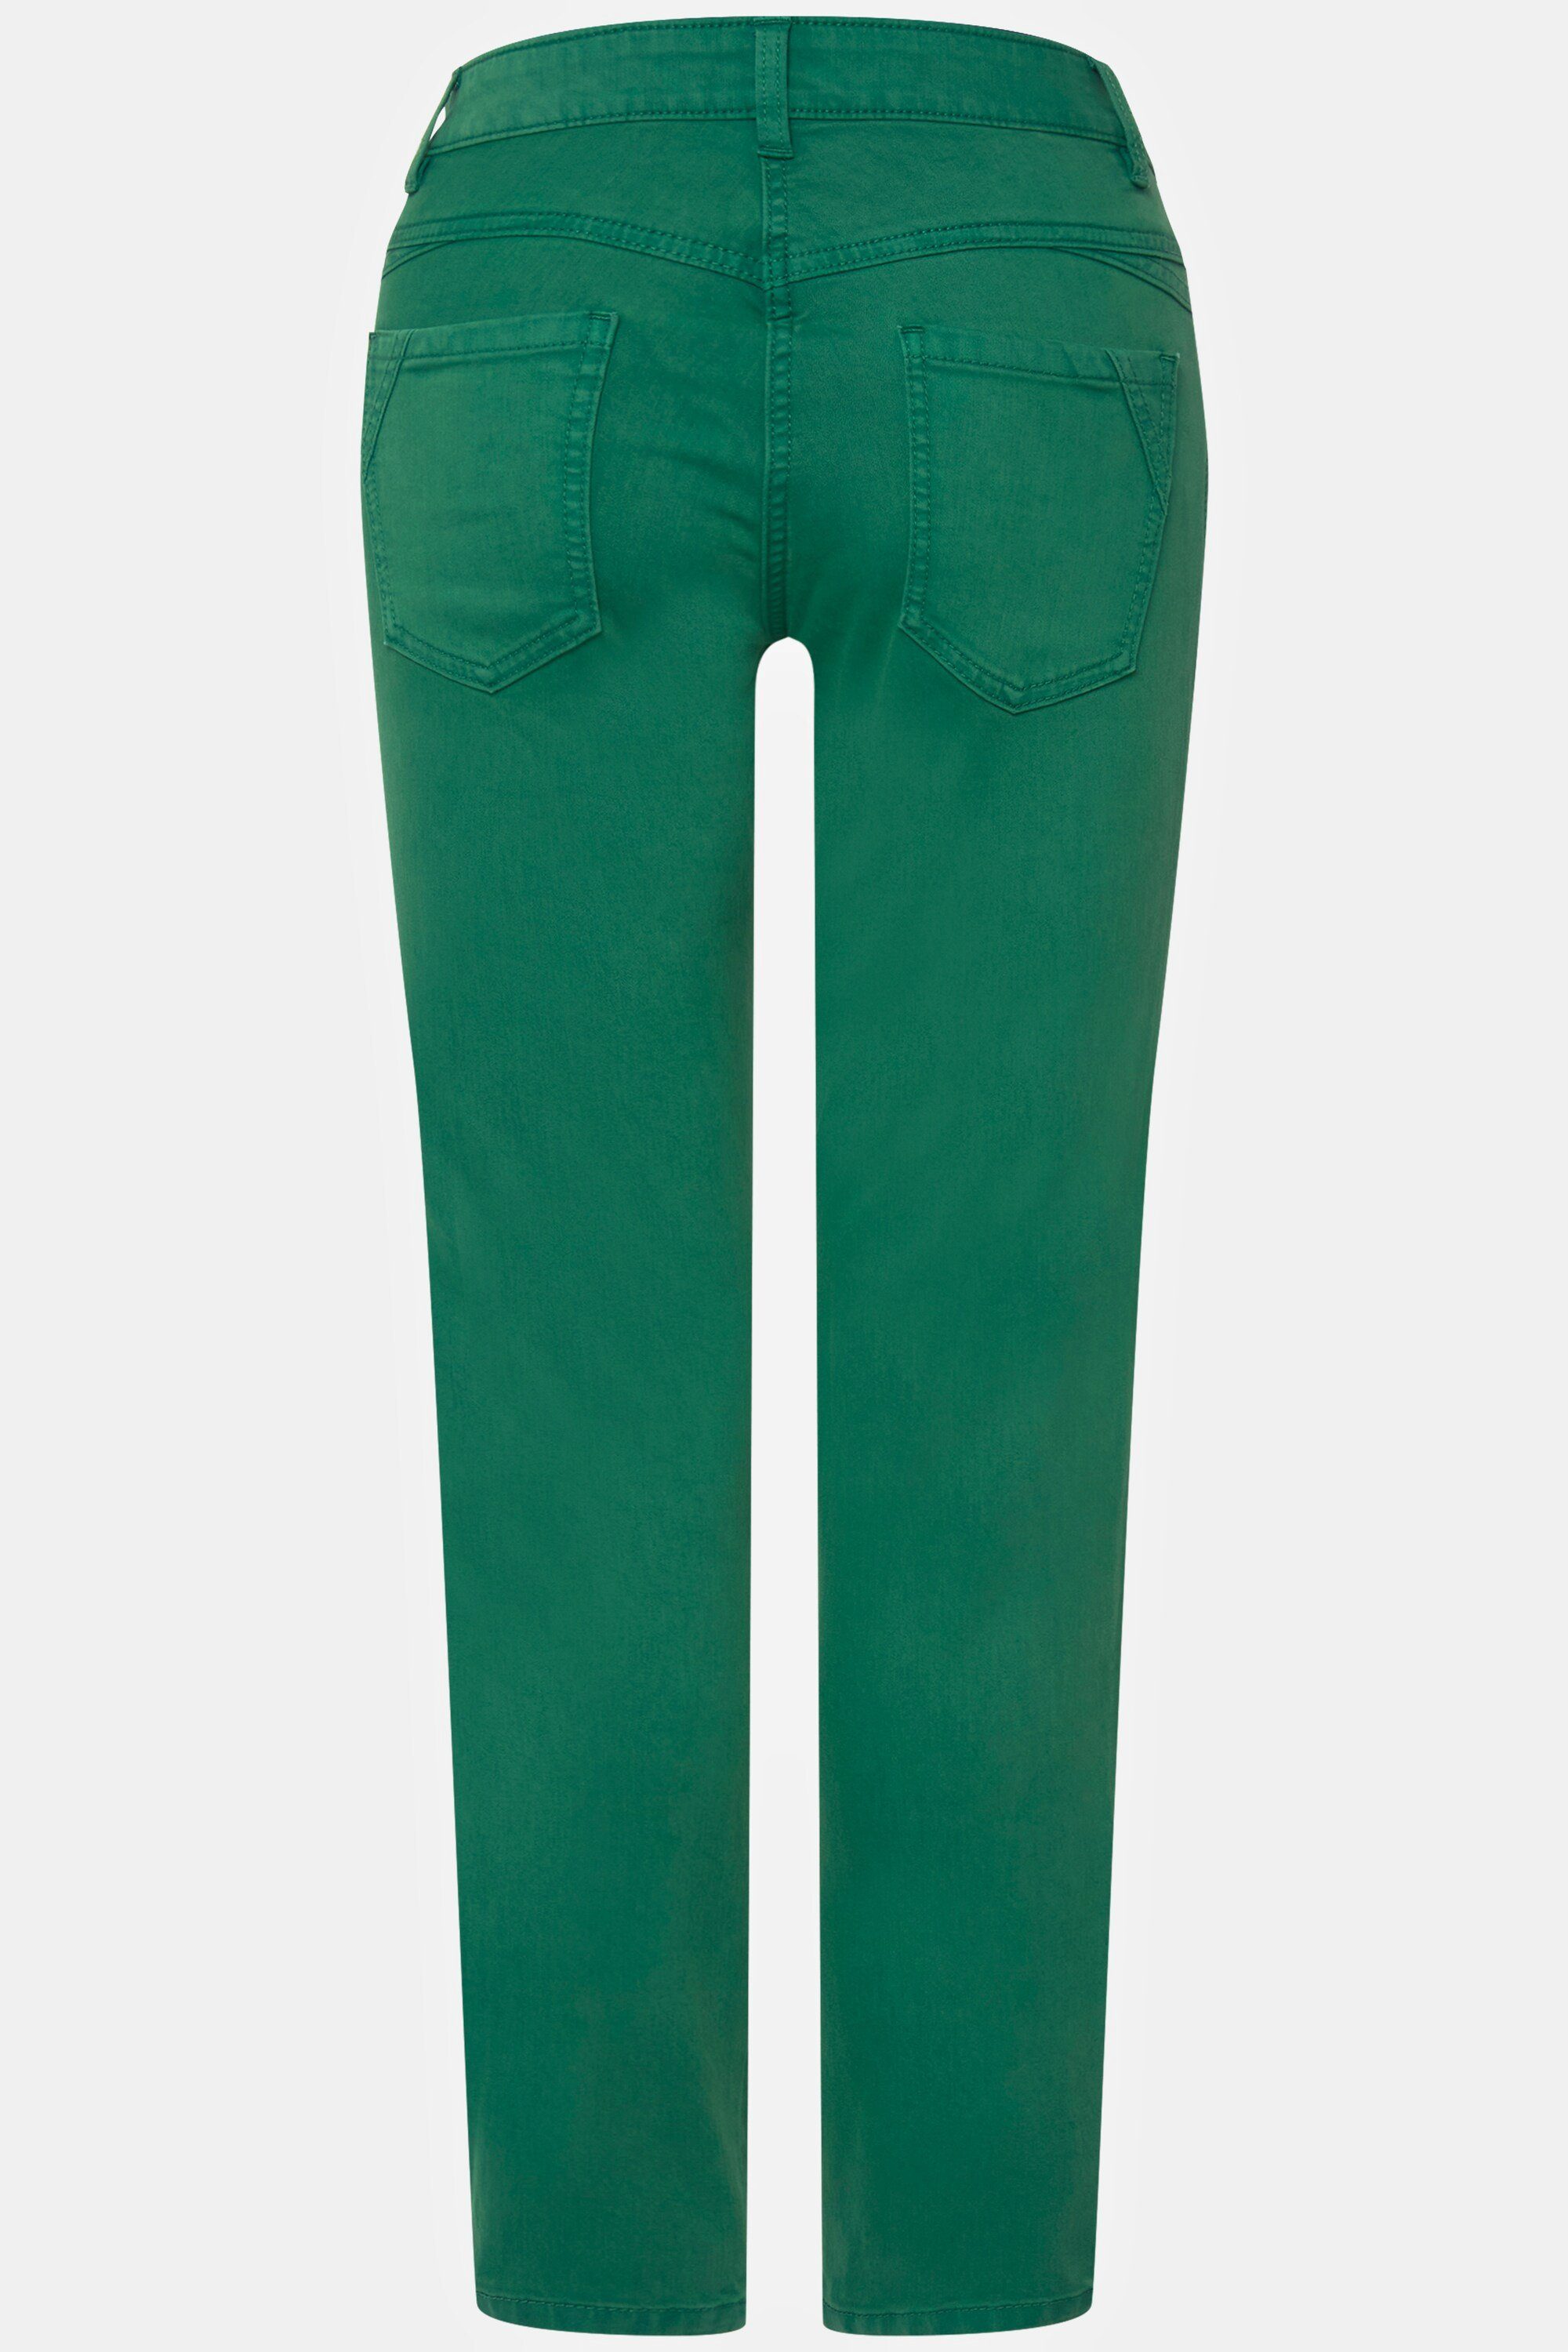 5-Pocket-Jeans Zierfalten grün gerade Passform Jeans Tina Laurasøn seitliche